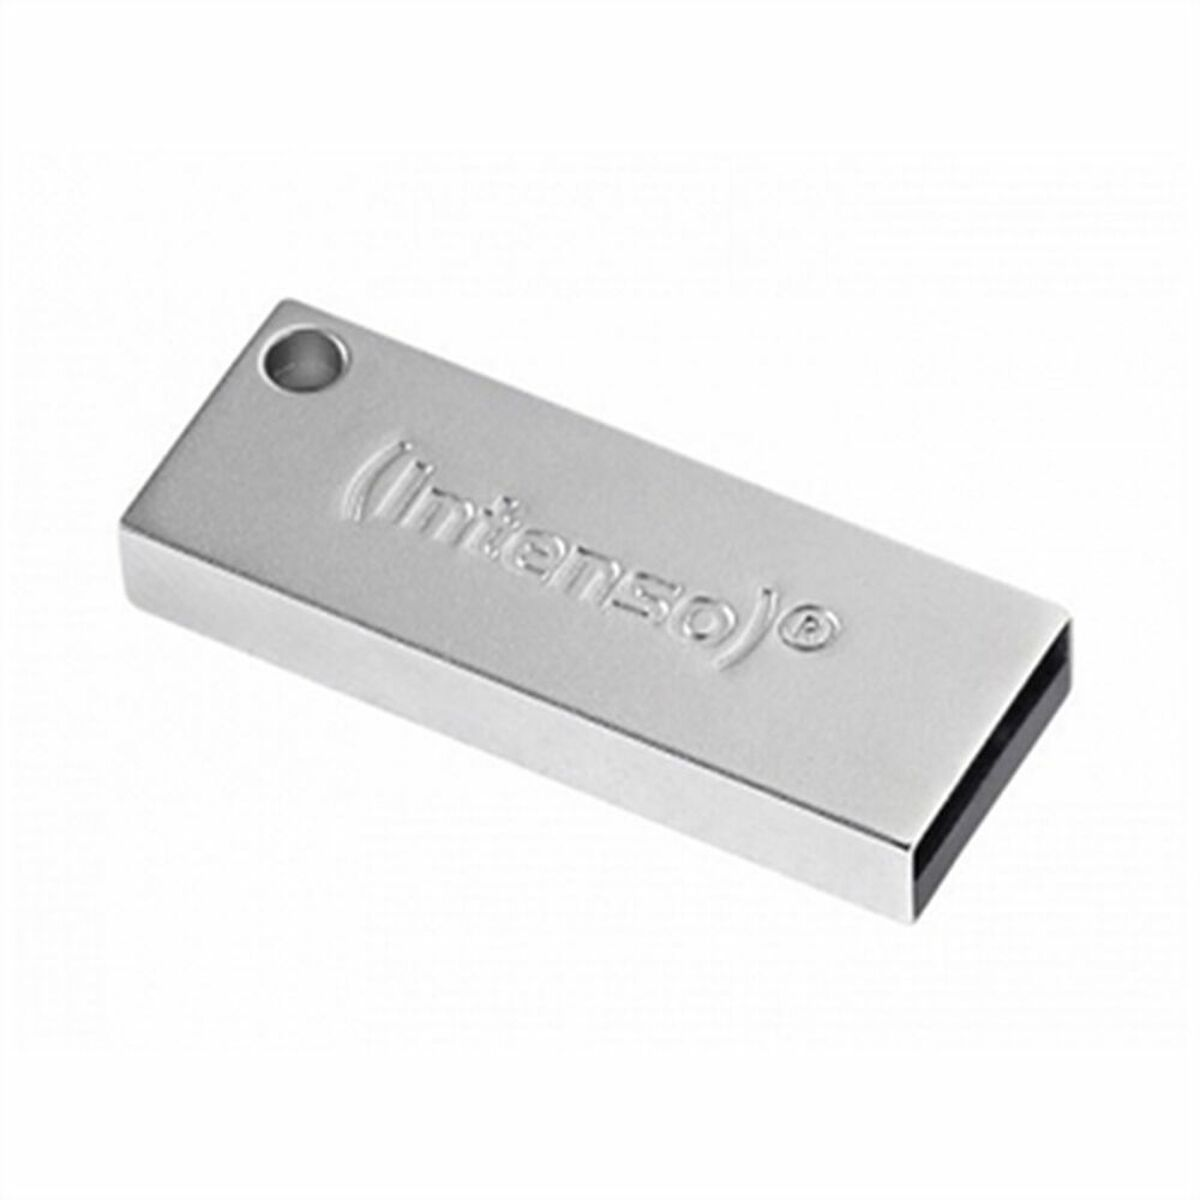 INTENSO 3534480 32GB 32 PREMIUM (Silber, LINE USB-Stick GB)